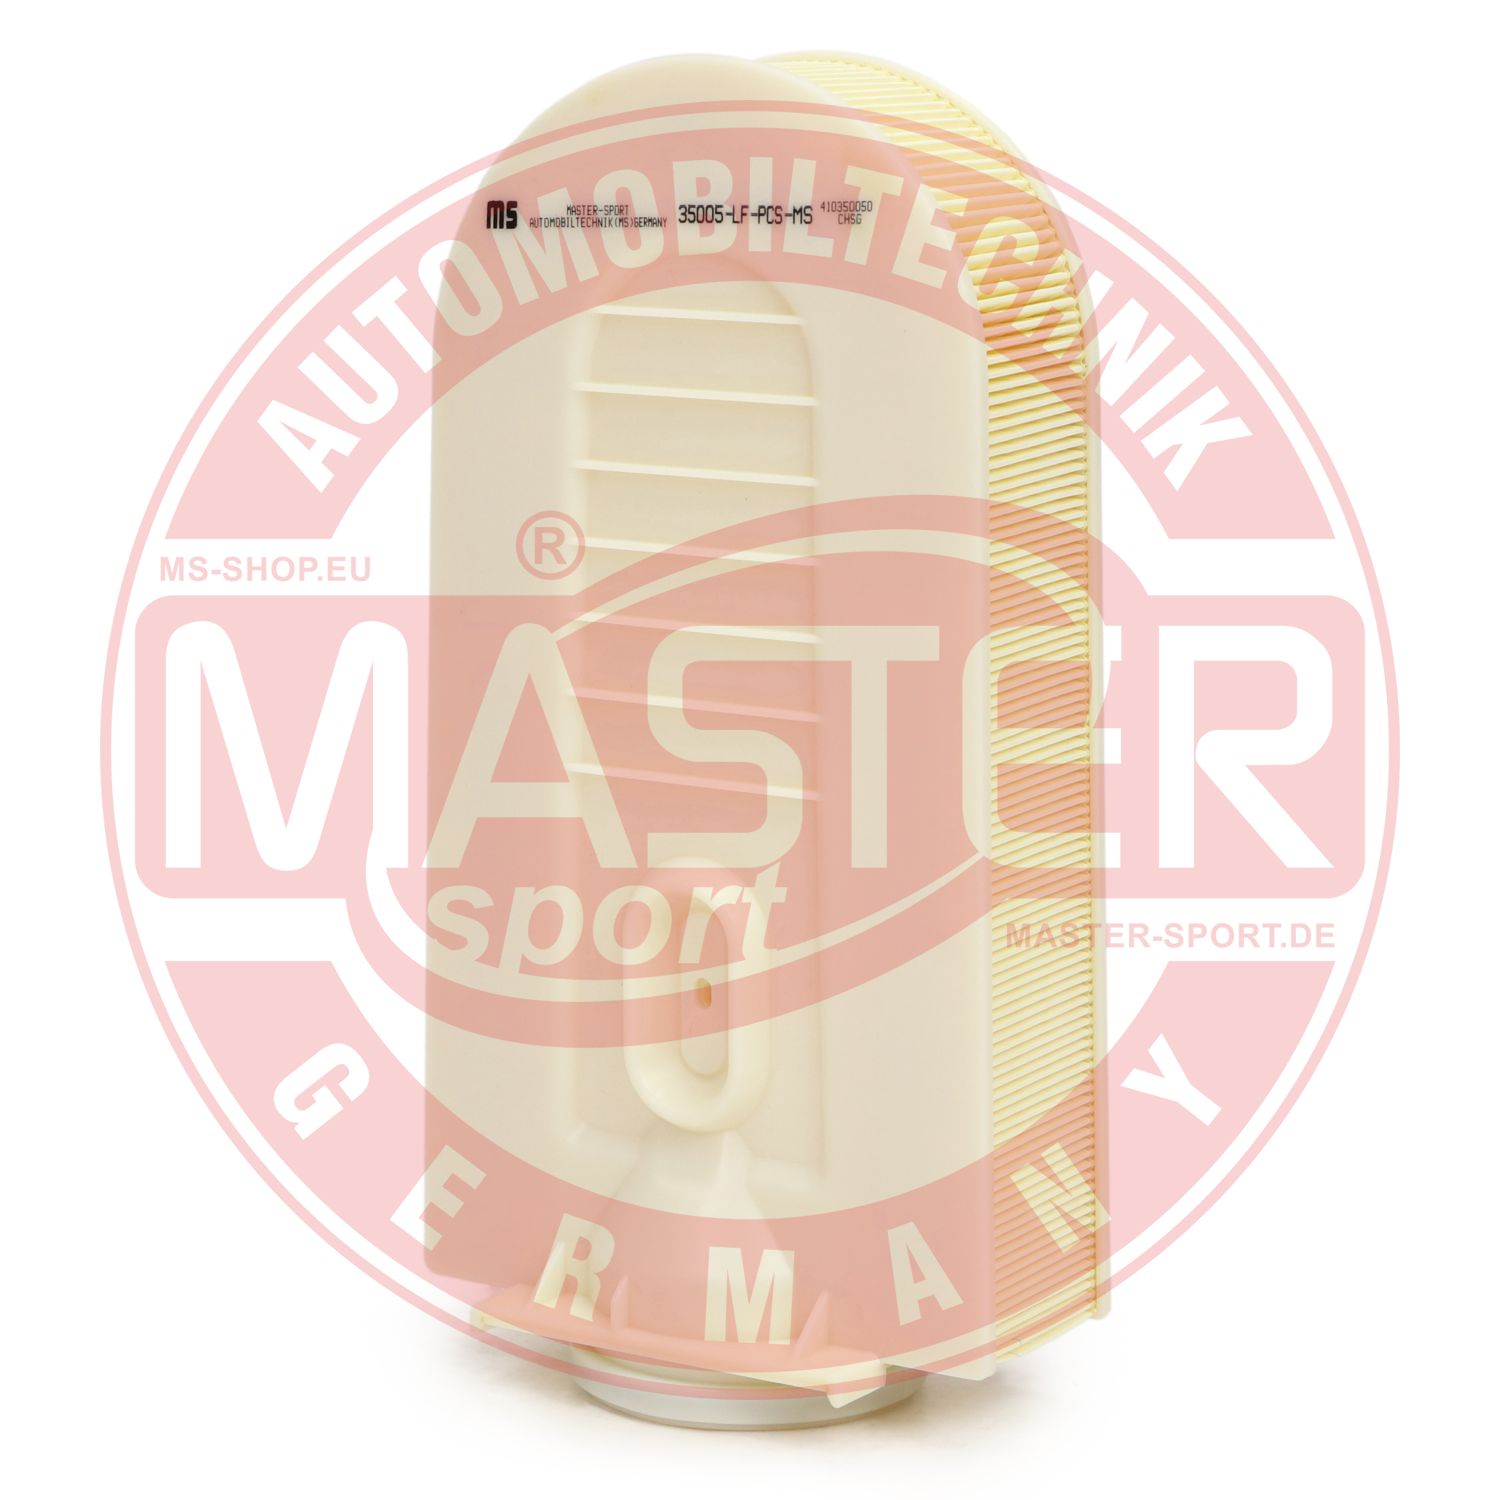 MASTER-SPORT 35005-LF-PCS-MS